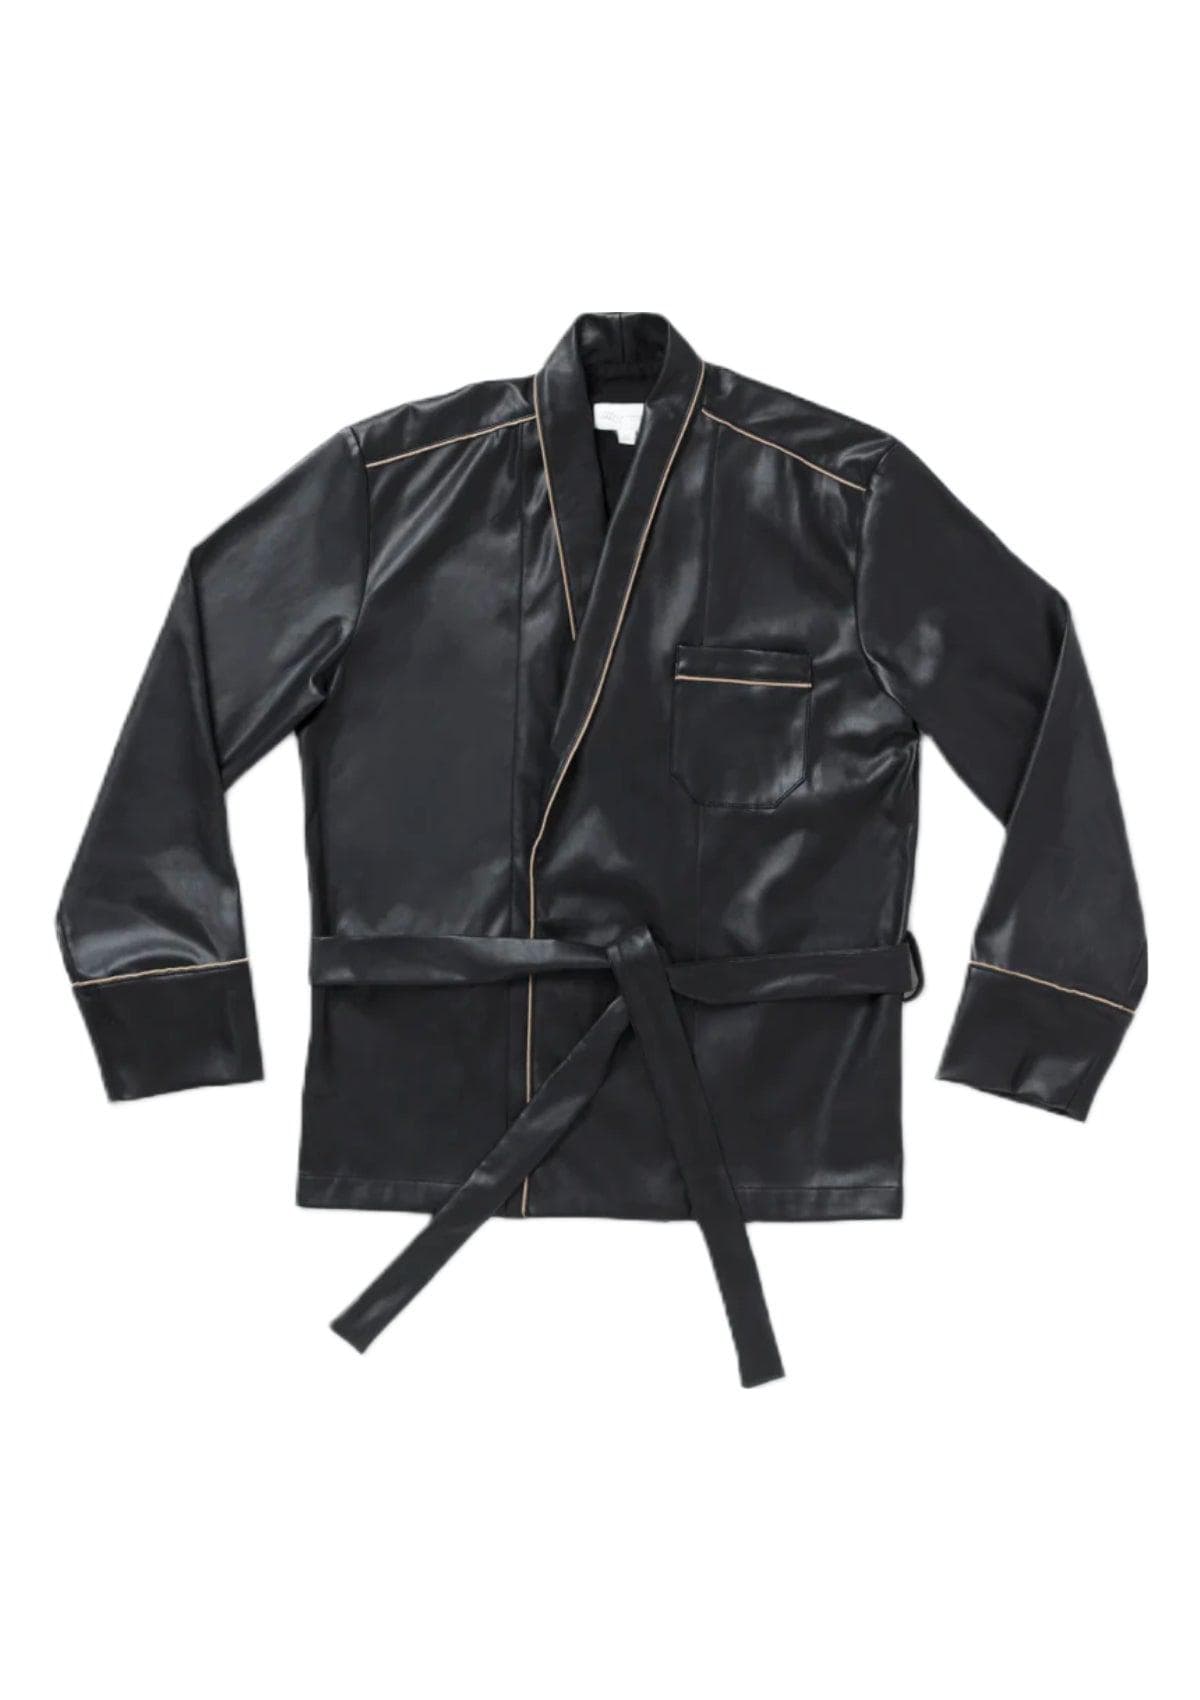 Sarelly Kimono - Black Leather